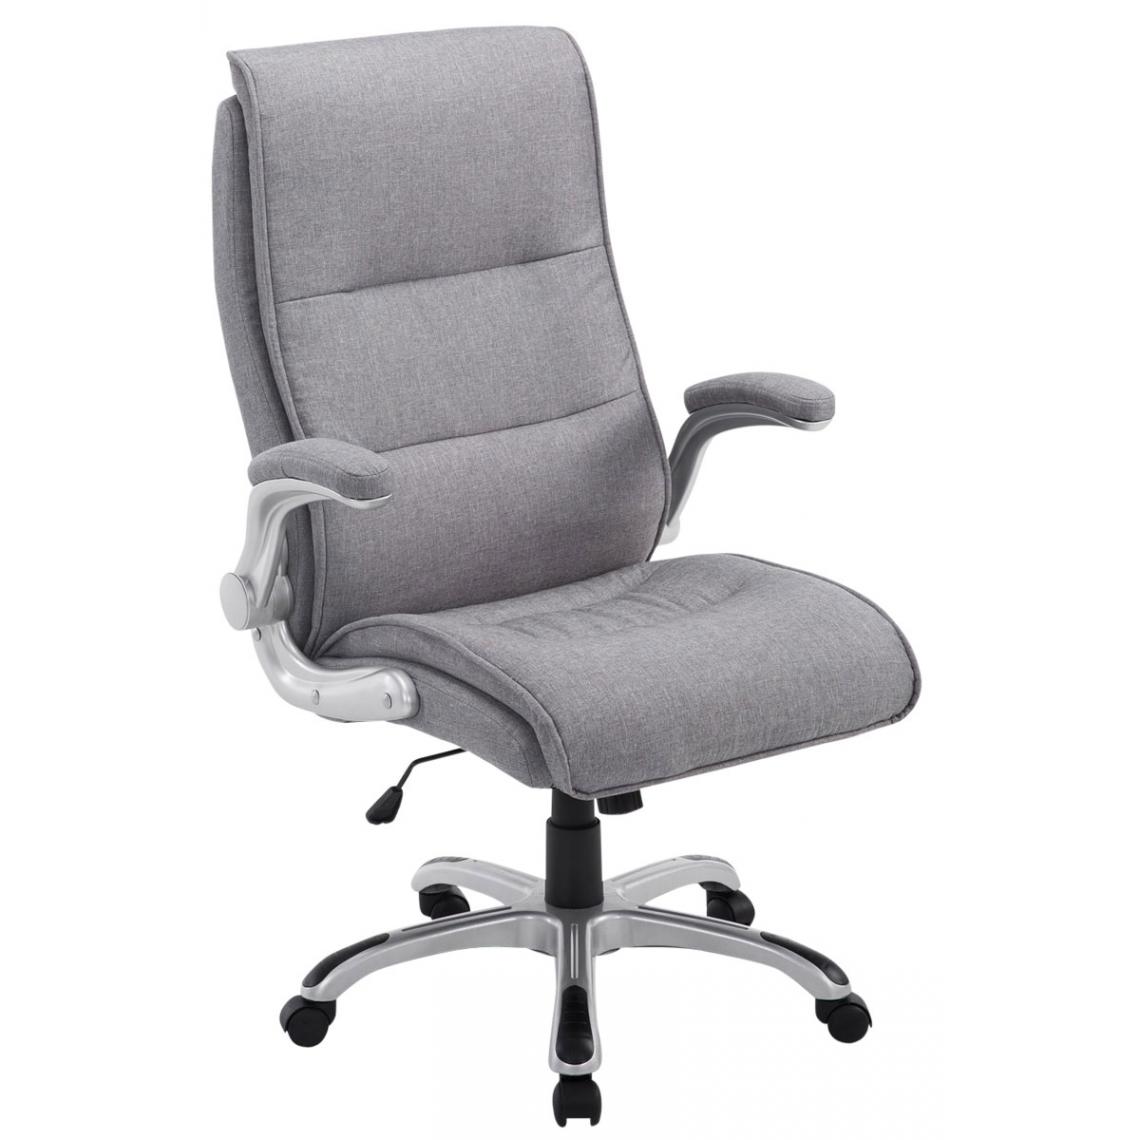 Icaverne - Splendide Chaise de bureau gamme Budapest Villach tissu couleur gris clair - Chaises